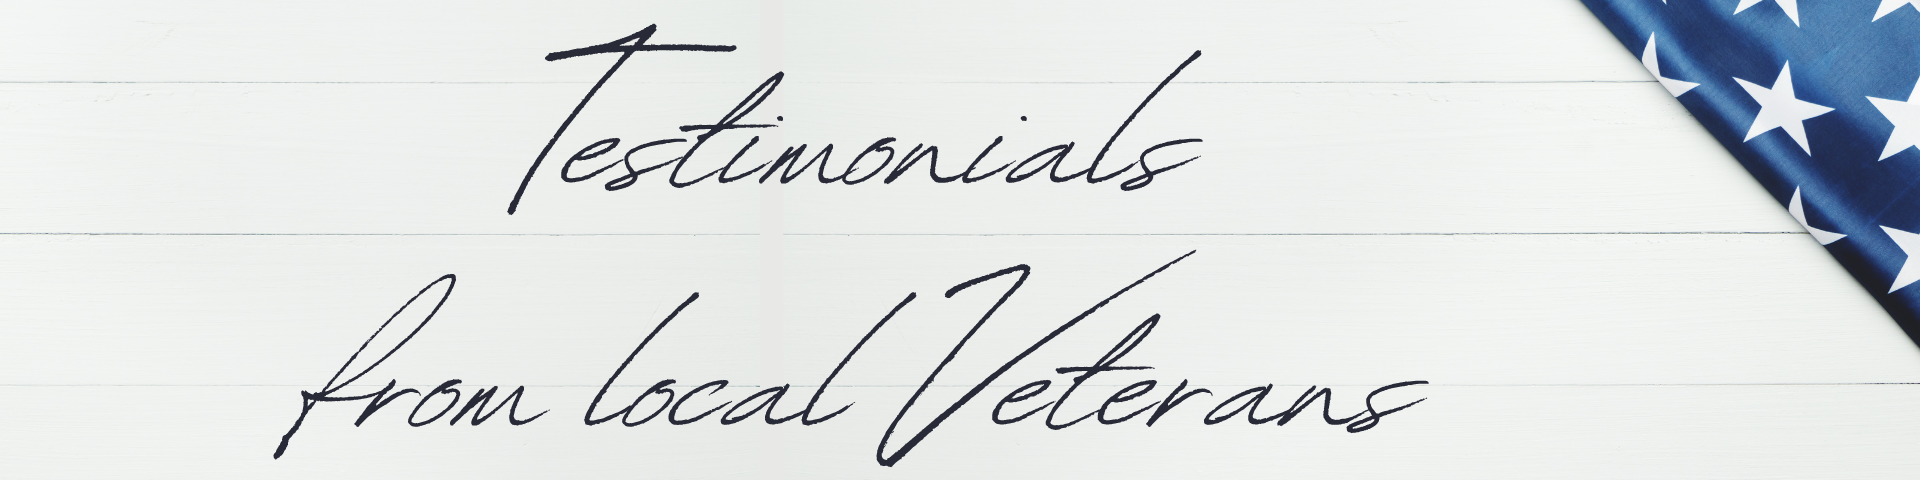 Veterans Testimonials blog header 112022